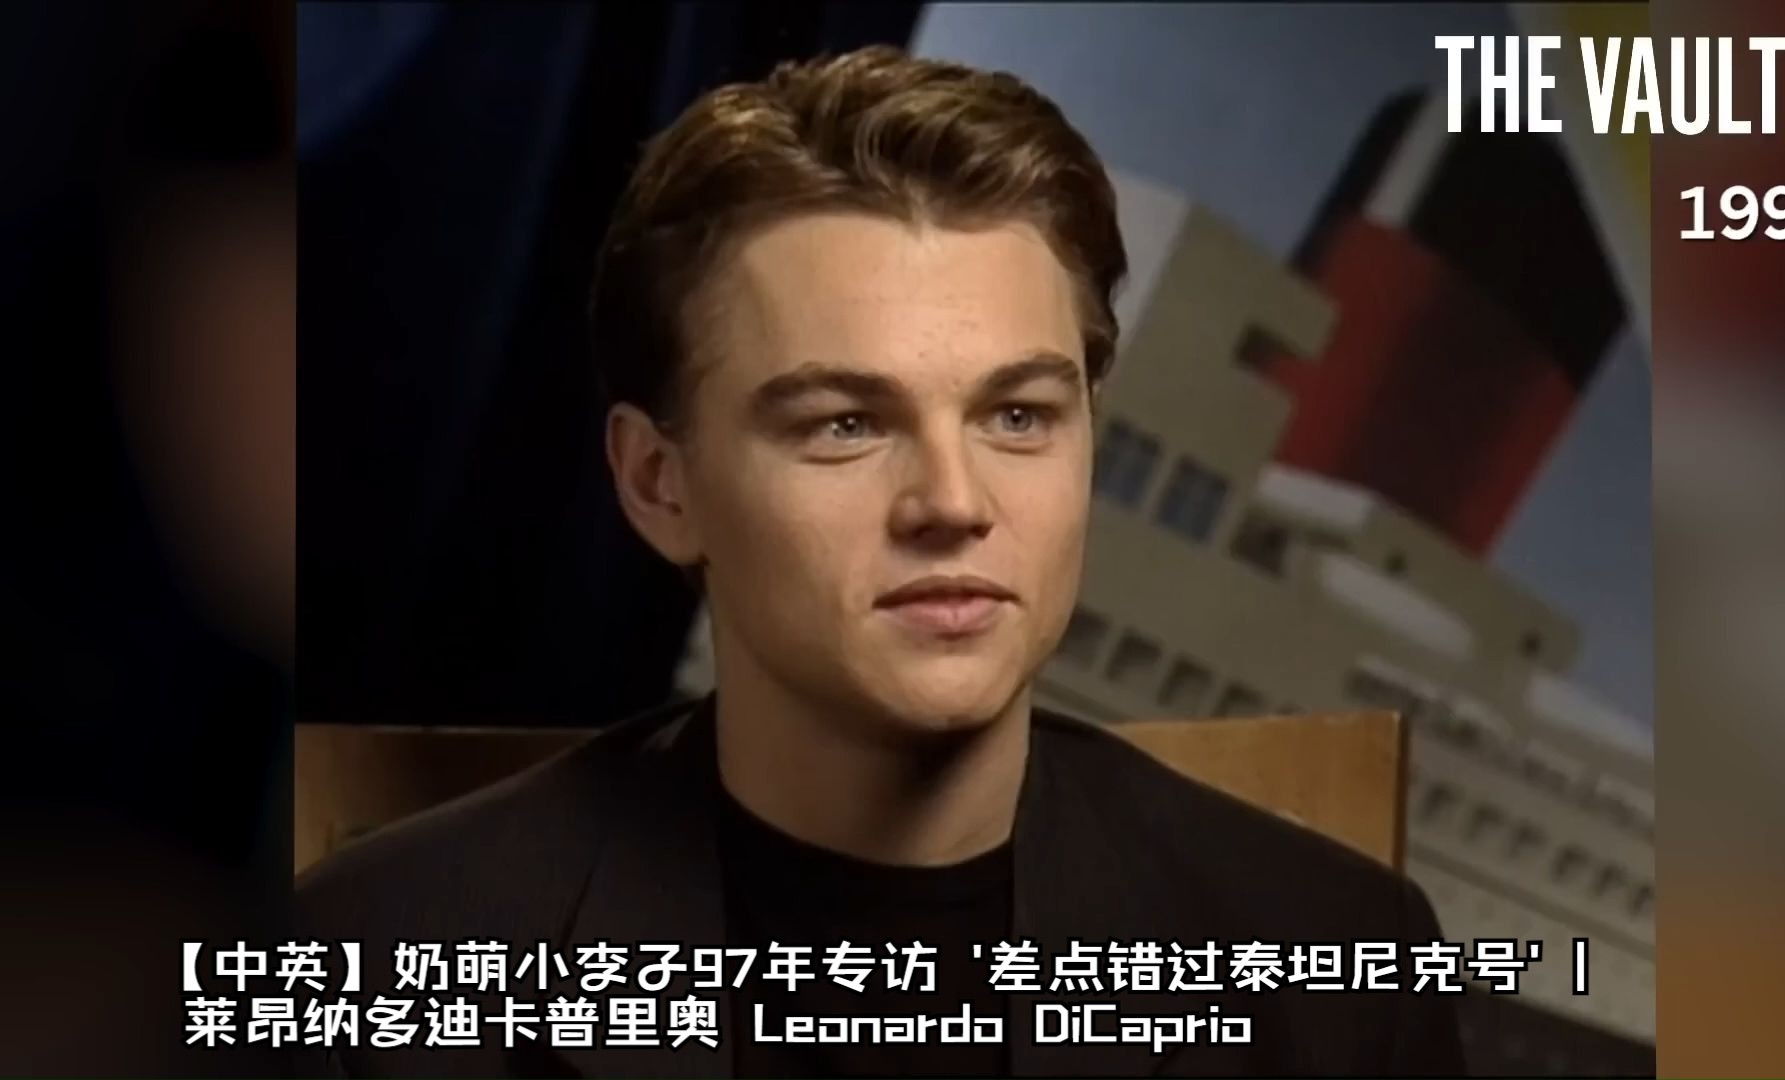 【中英】奶萌小李子97年专访 '差点错过泰坦尼克号' | 莱昂纳多迪卡普里奥 Leonardo DiCaprio